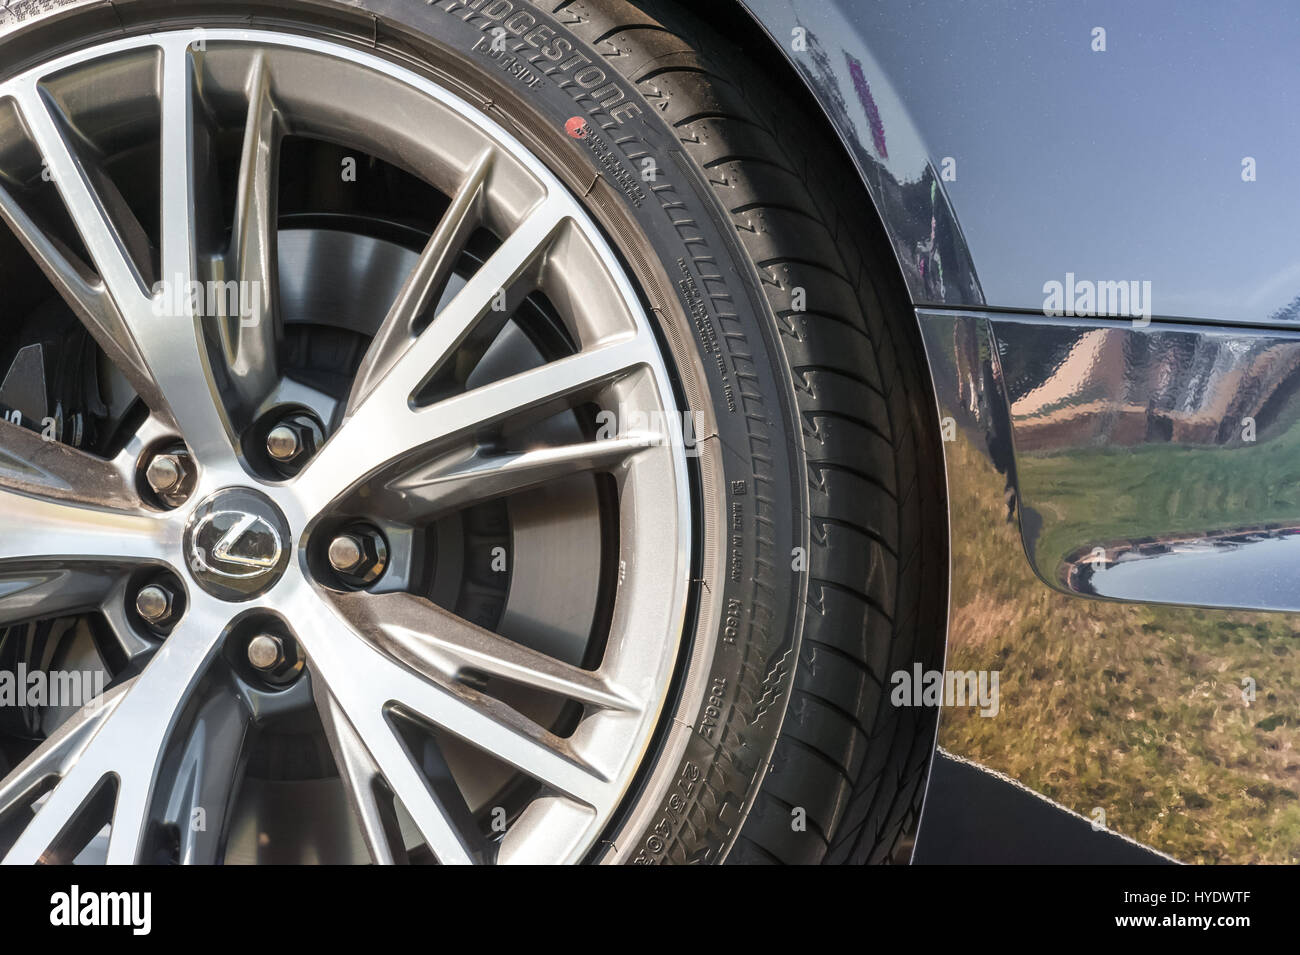 Laverstoke, Hampshire, UK - 25. August 2016: Nahaufnahme eines Luxus Lexus Automobile Rad und Reifen mit Himmel und Grünland Reflexionen im Hintergrund Stockfoto